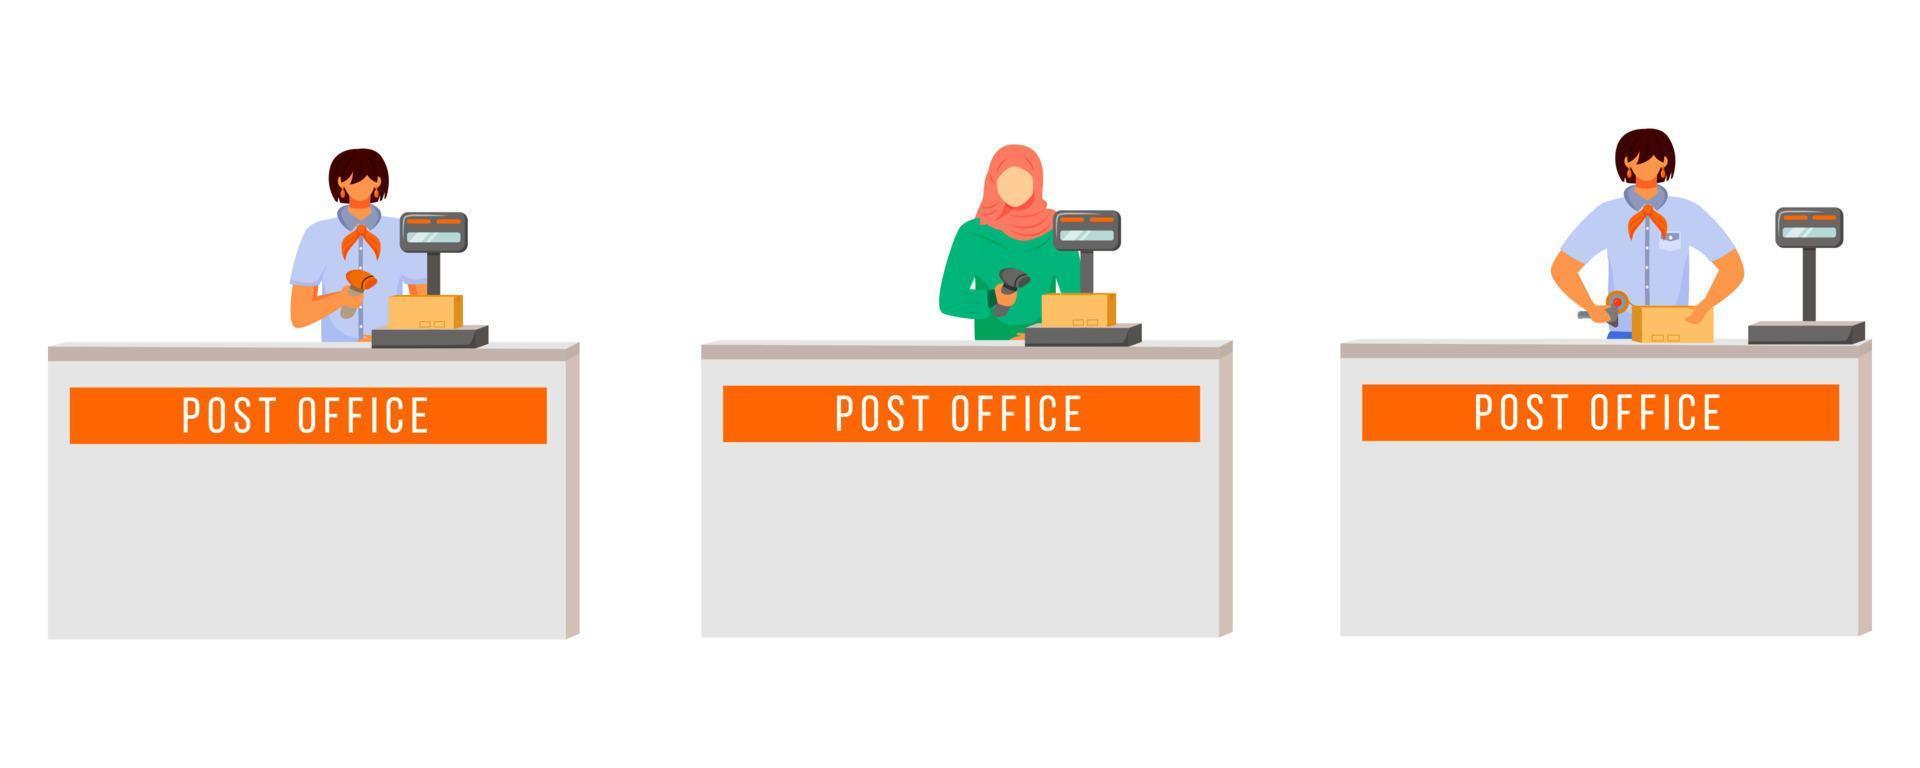 postkantoor vrouwelijke werknemers egale kleur vector illustratie set. vrouw met hijab scant pakketten. postservice leveringsproces. inzamelpunt geïsoleerde stripfiguur op witte achtergrond